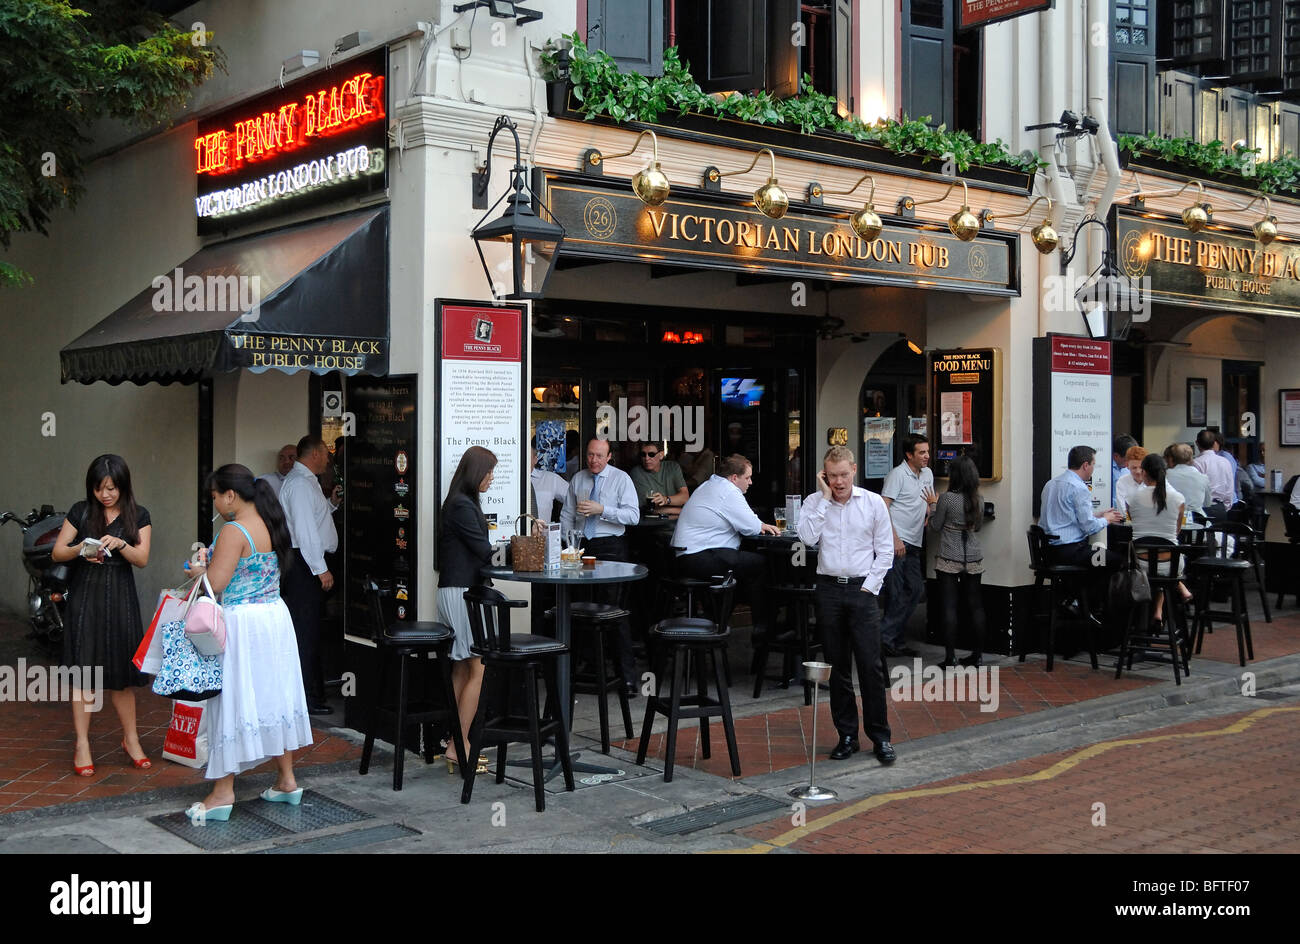 Büroangestellte trinken in die Penny Black, viktorianischen London Pub, Englisch oder britisches Thema Bar, am Boat Quay, Singapur Stockfoto